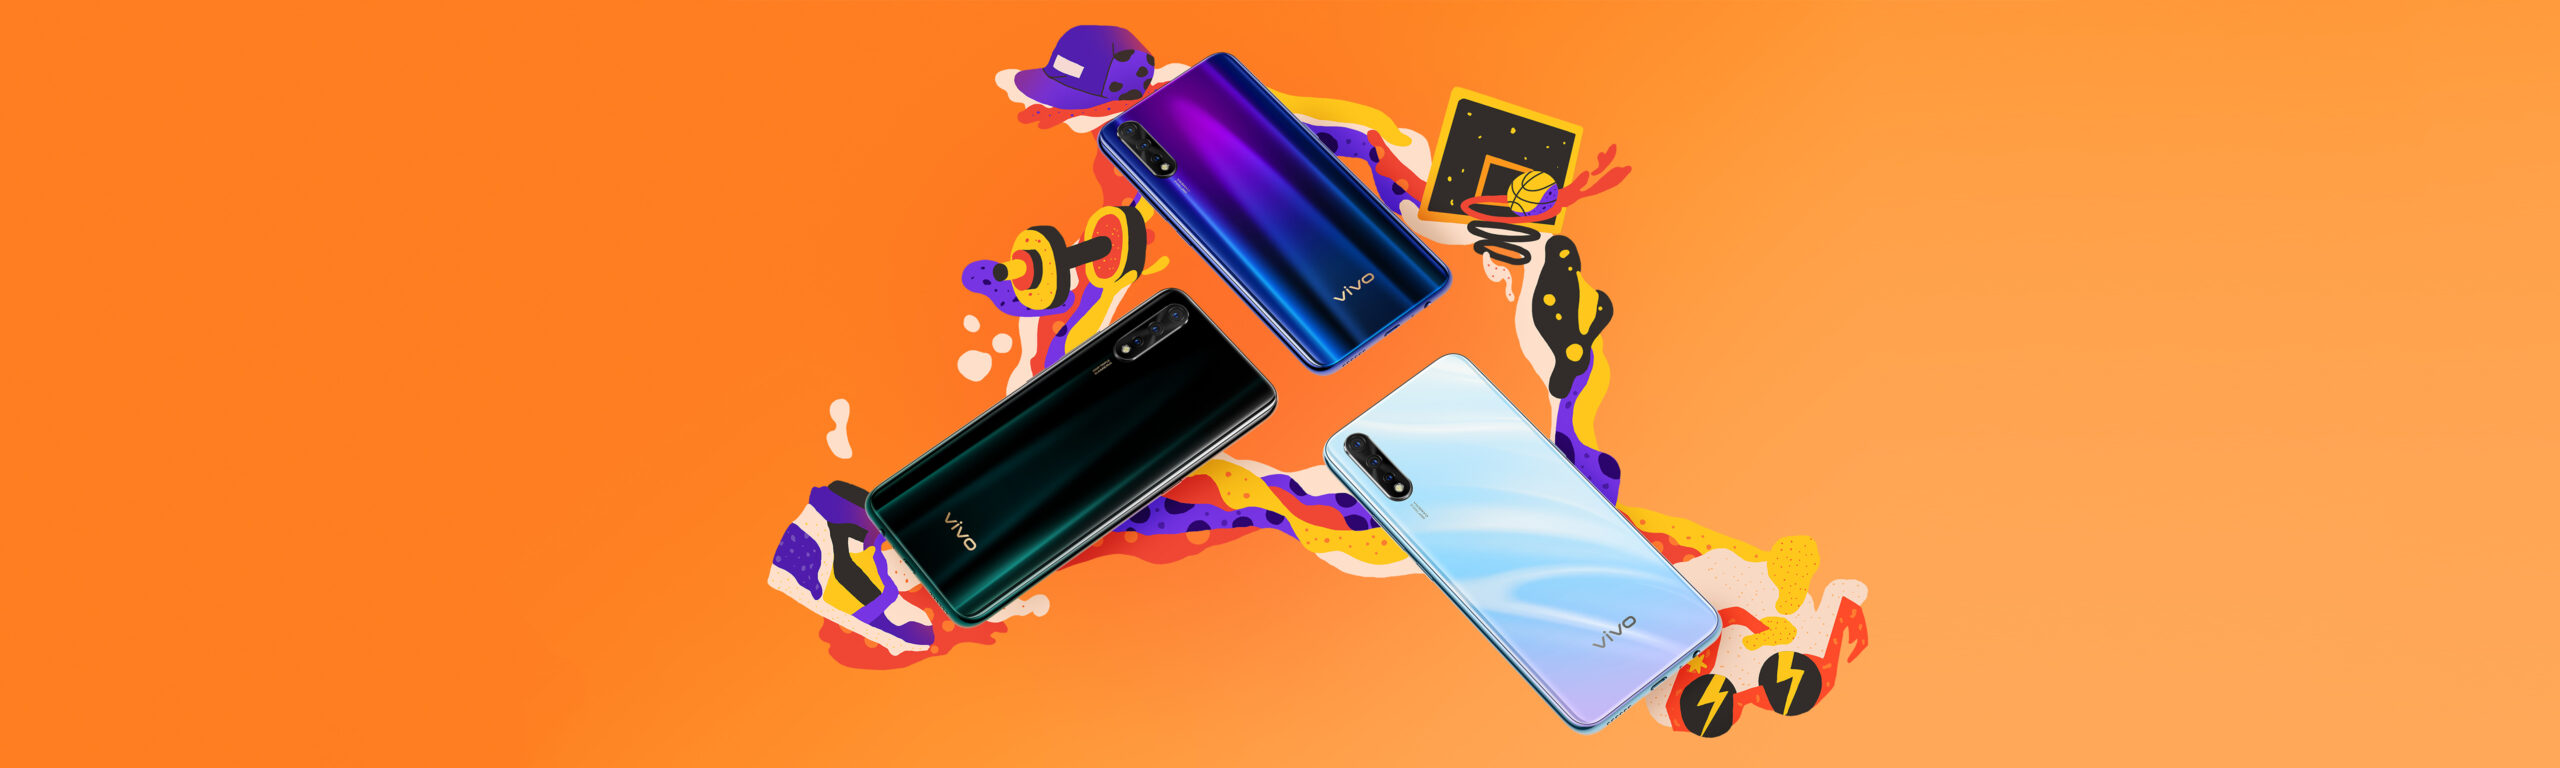 Лучшие телефоны Snapdragon 712 для покупки в 2019 году